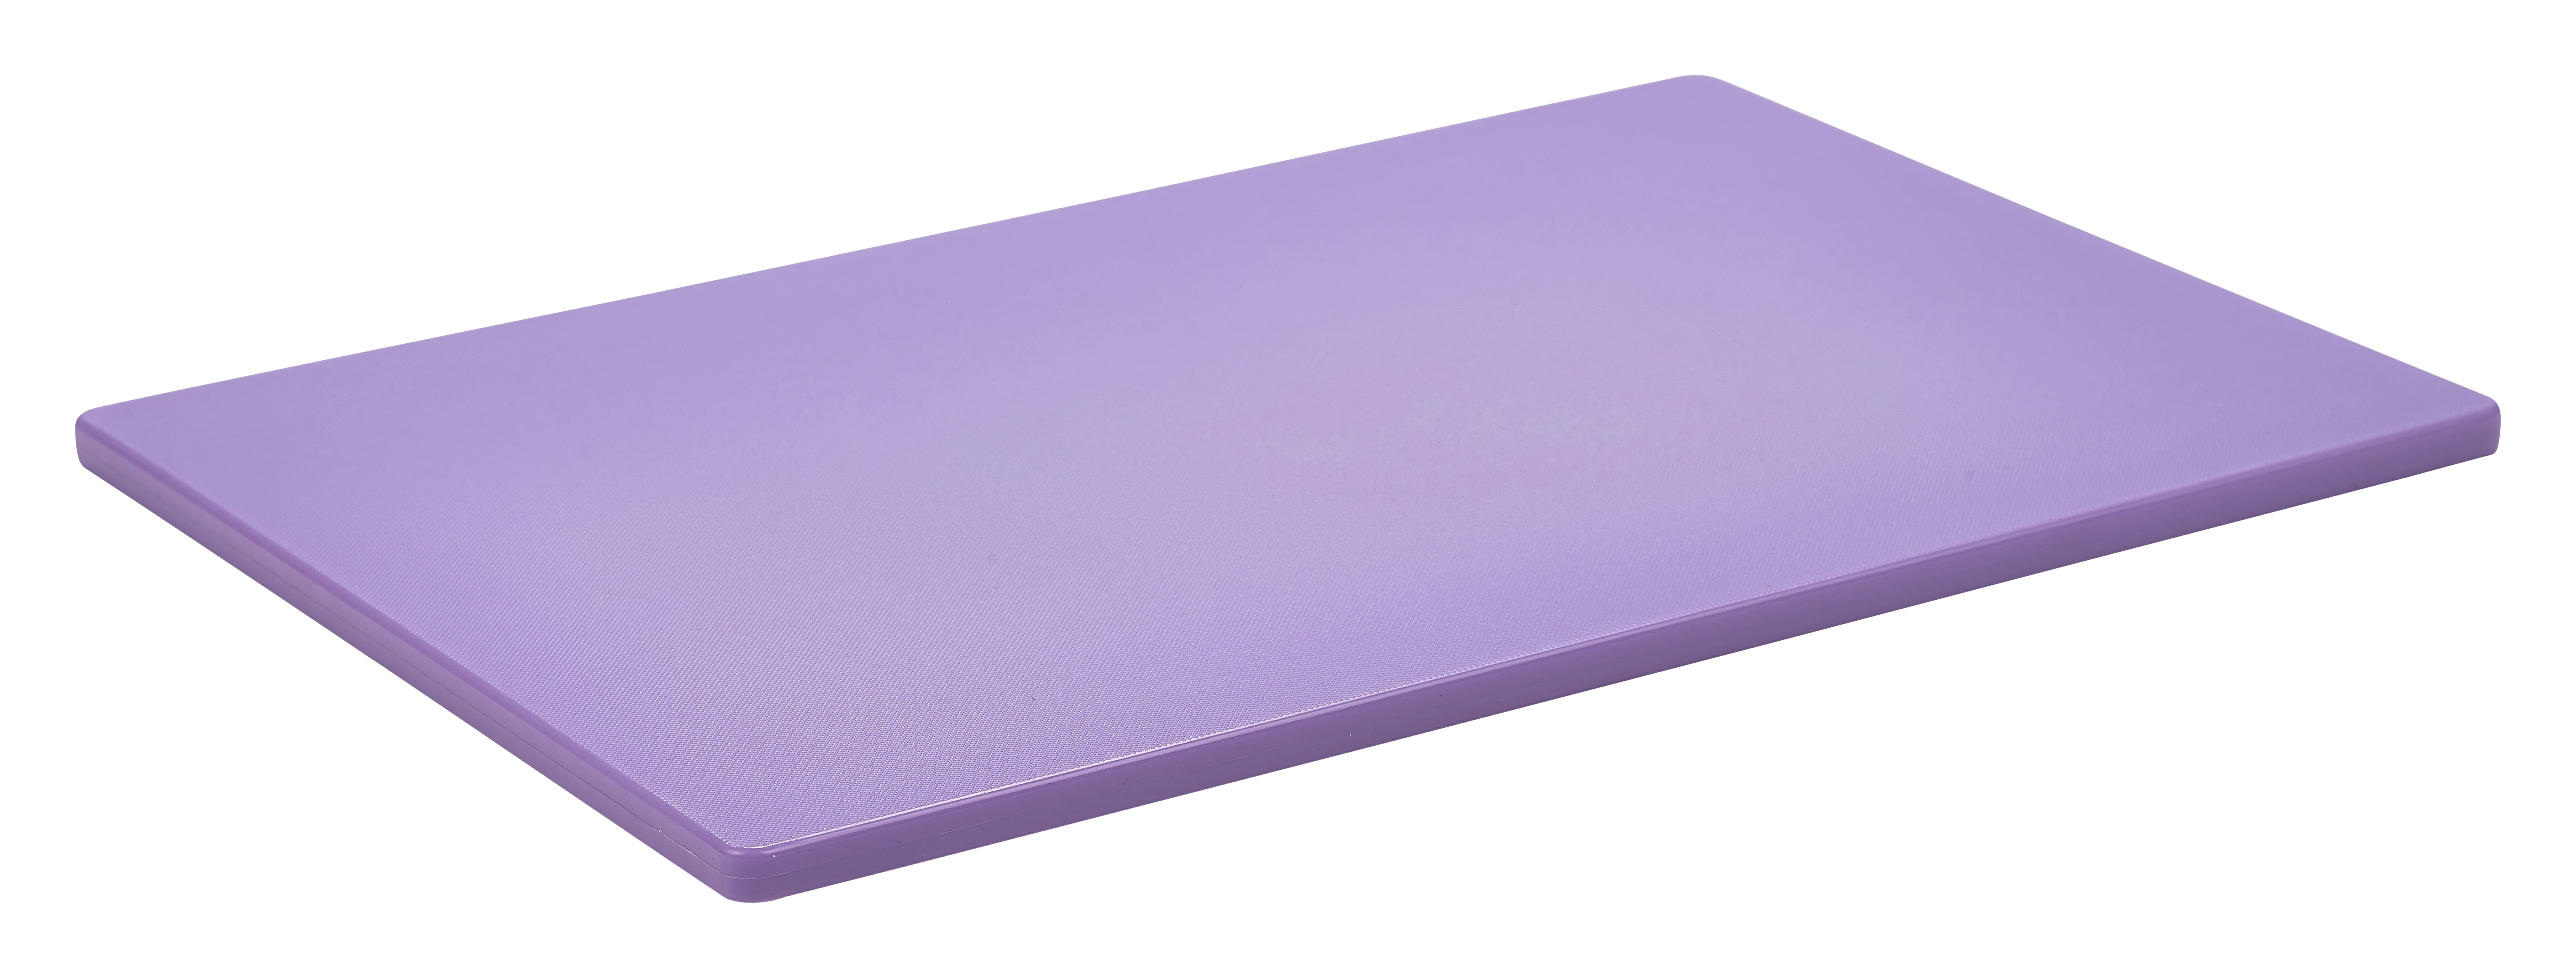 GenWare Purple Low Density Chopping Board 18 x 12 x 0.5"